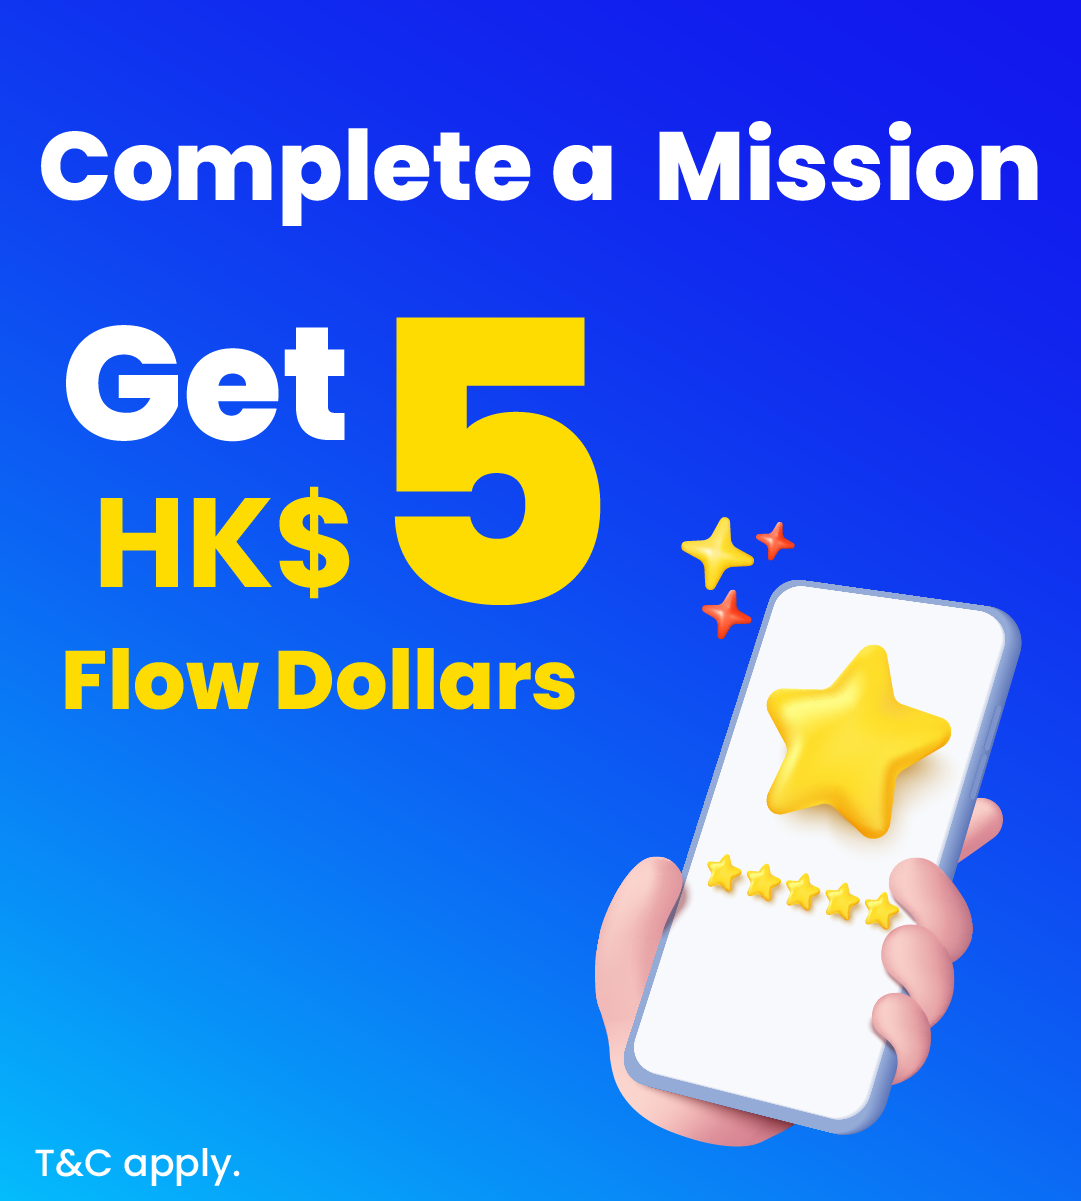 Complete a Mission & Get HK$5 Flow Dollars!